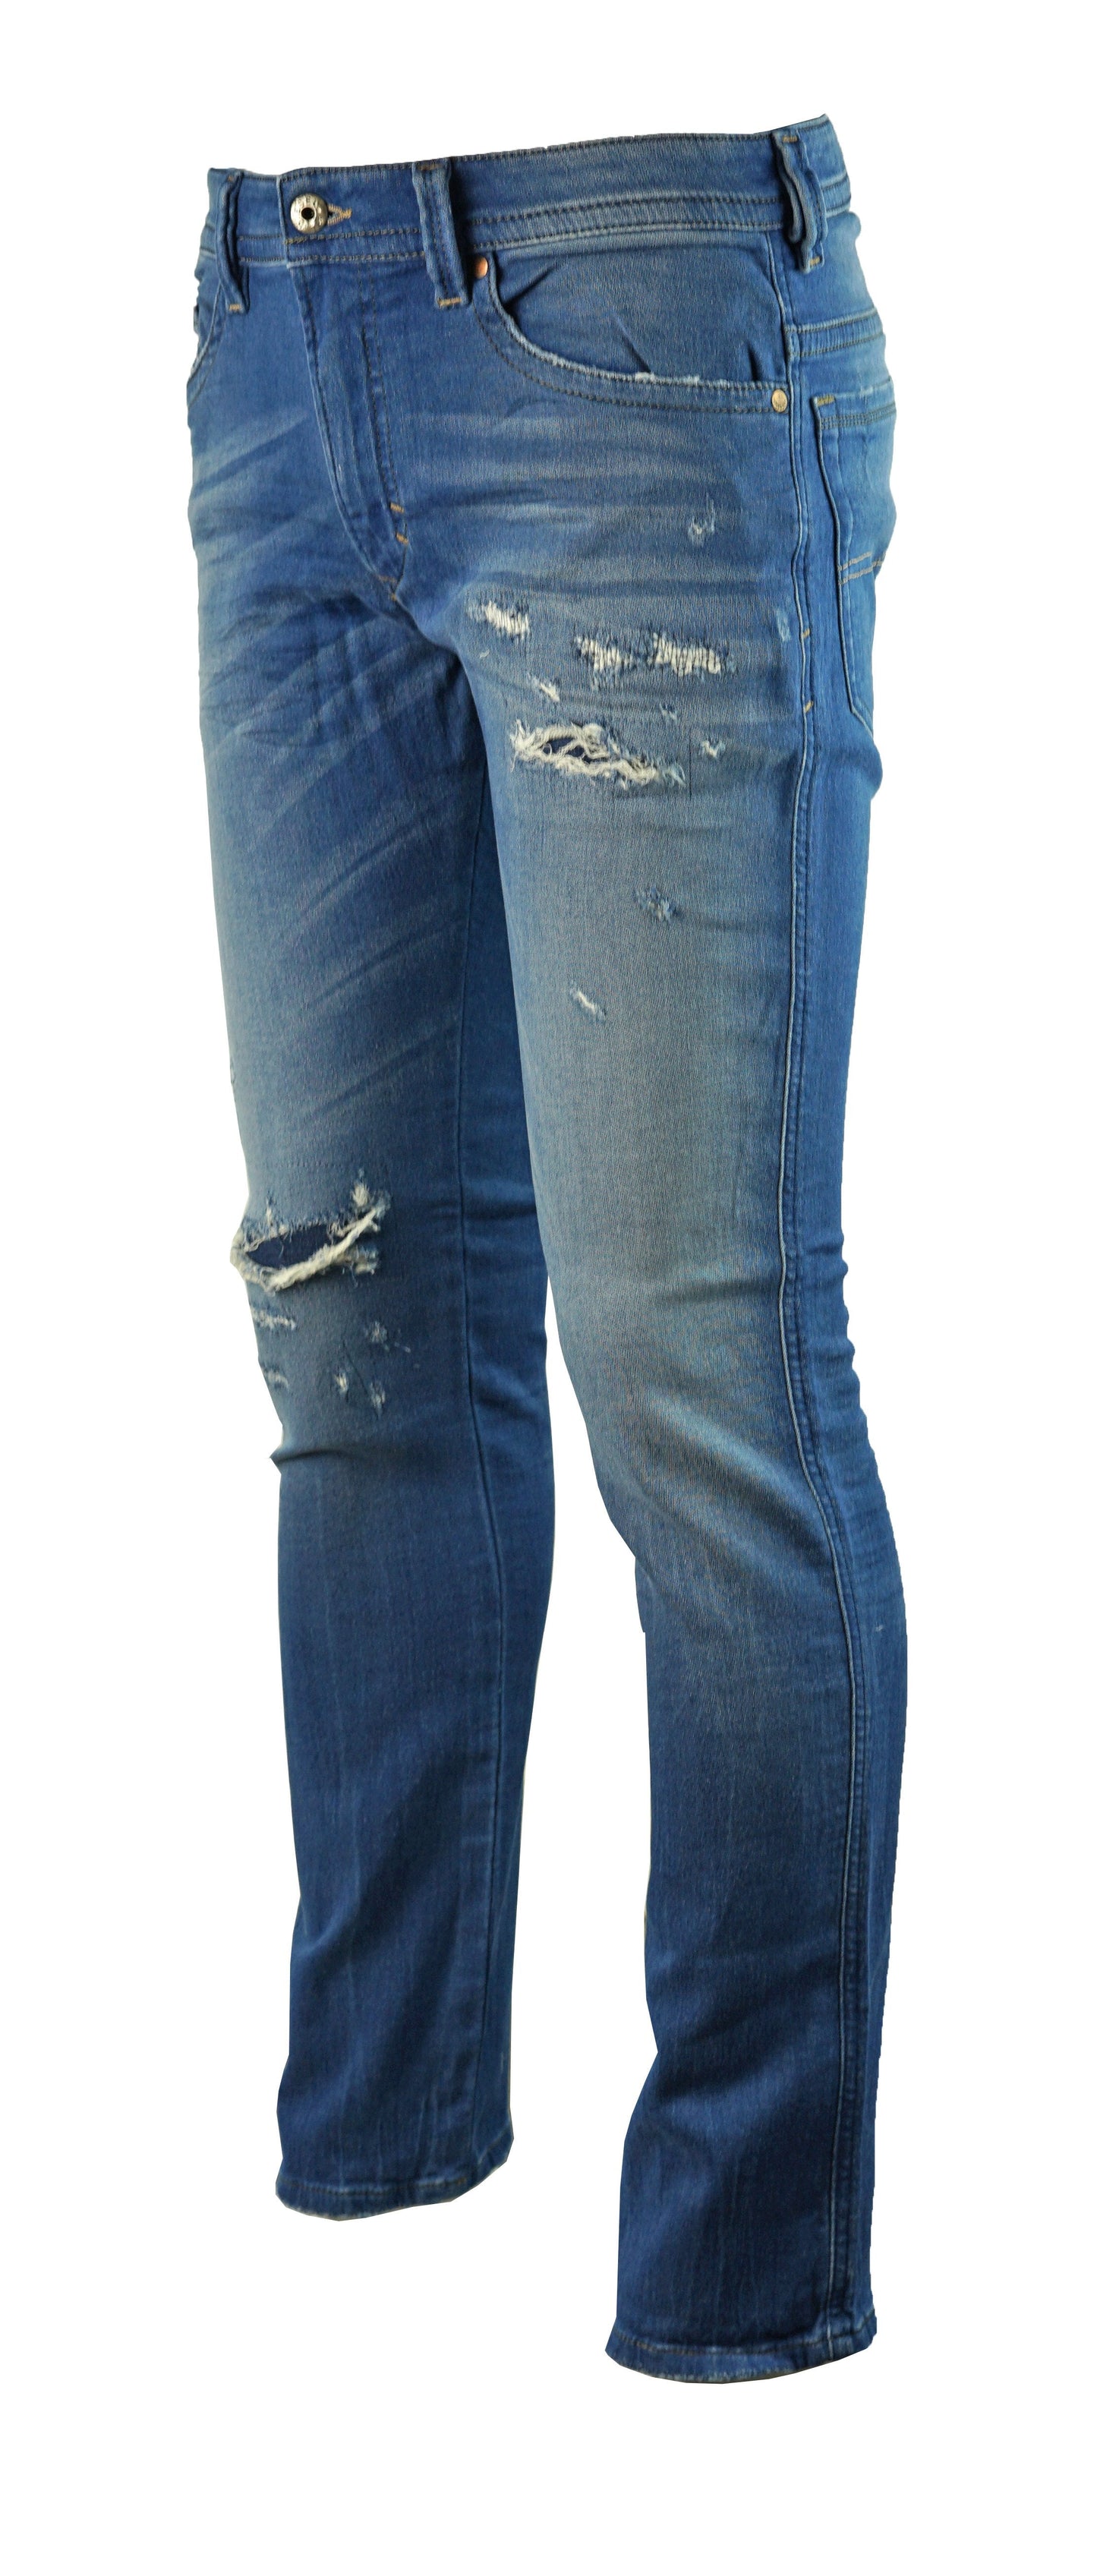 Diesel Thavar-NE 0R73T8 Jeans - Style Centre Wholesale